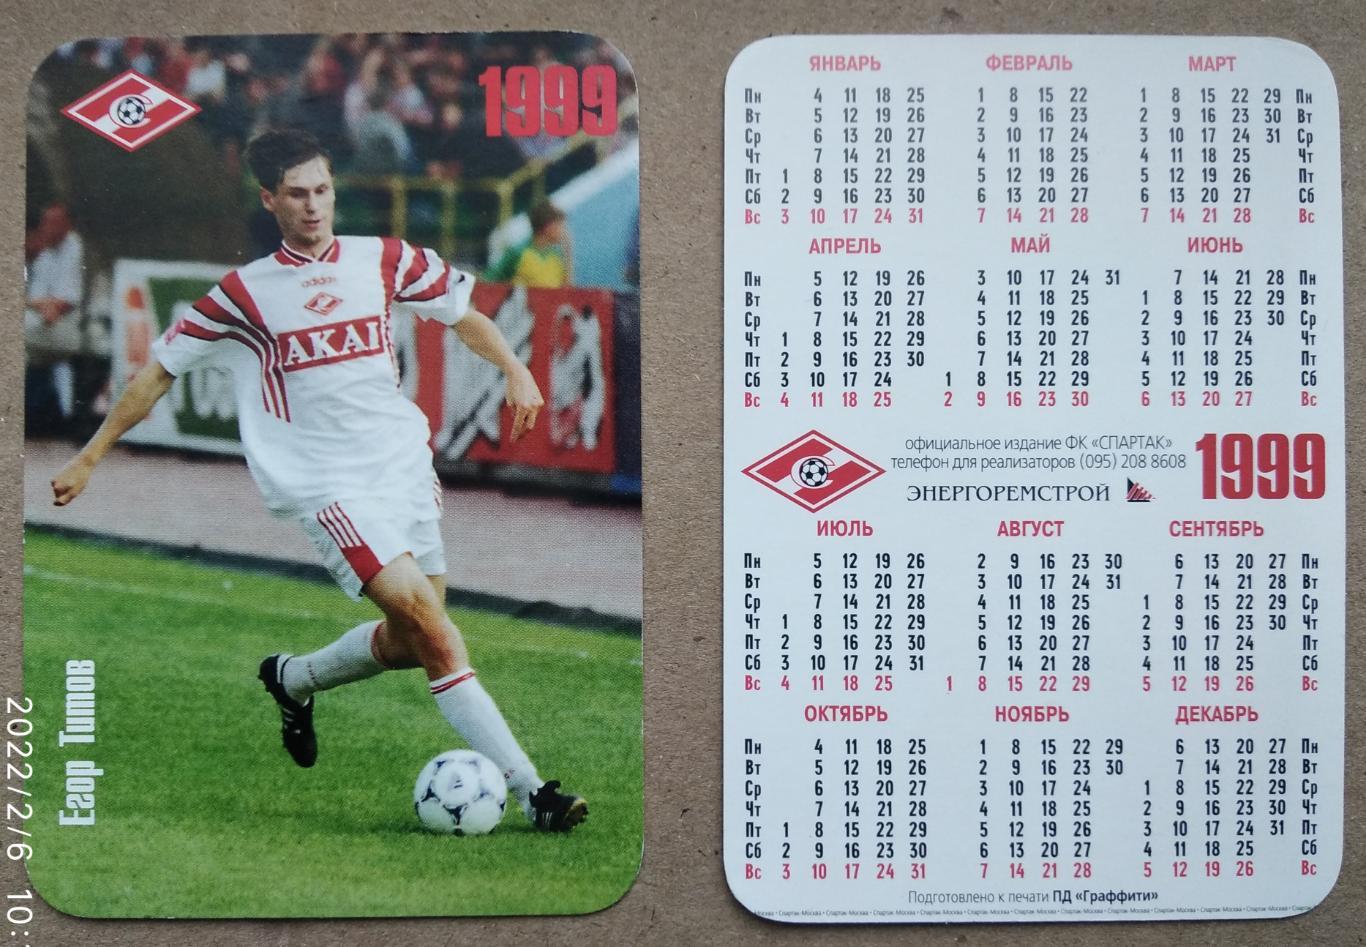 Спартак Москва - Титов , календарик на 1999 год, официальное издание клуба